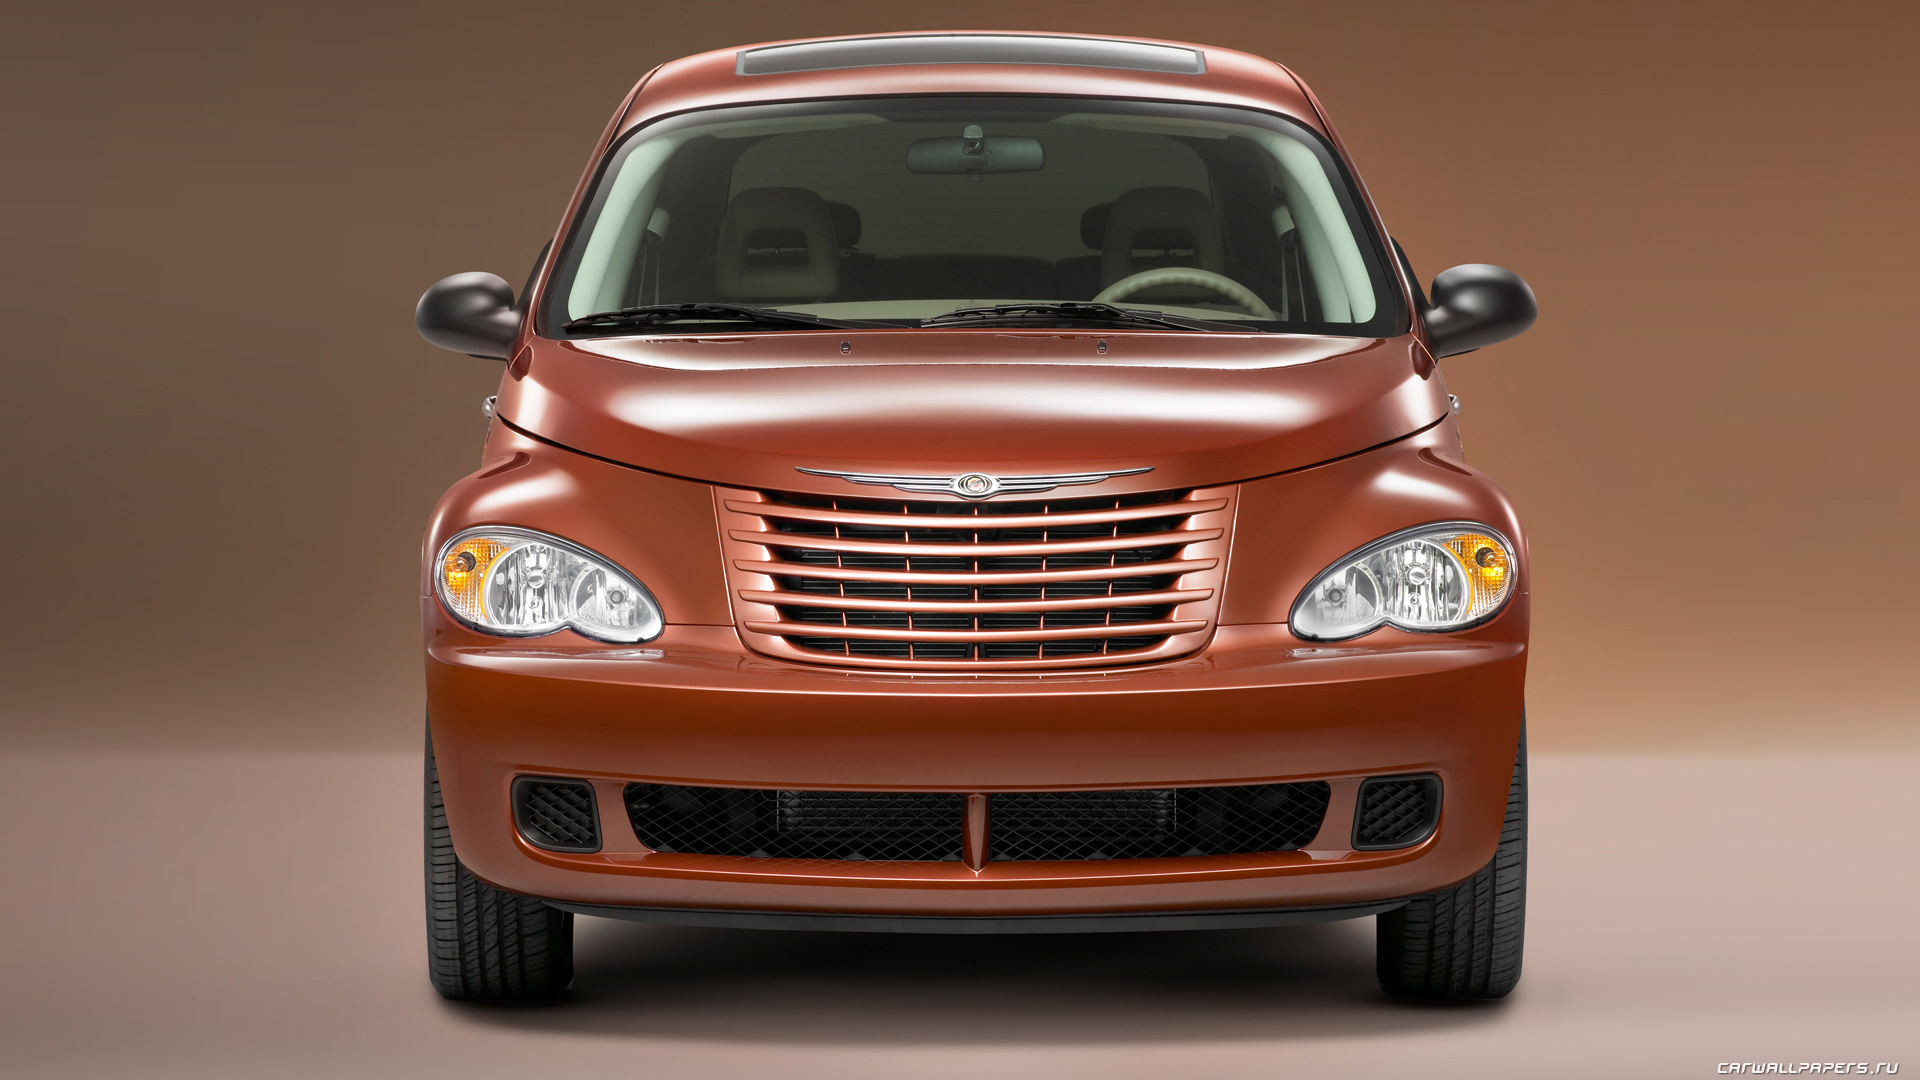 Chrysler PT Cruiser, Sunset Boulevard edition, 2008 model, Cars desktop wallpapers, 1920x1080 Full HD Desktop